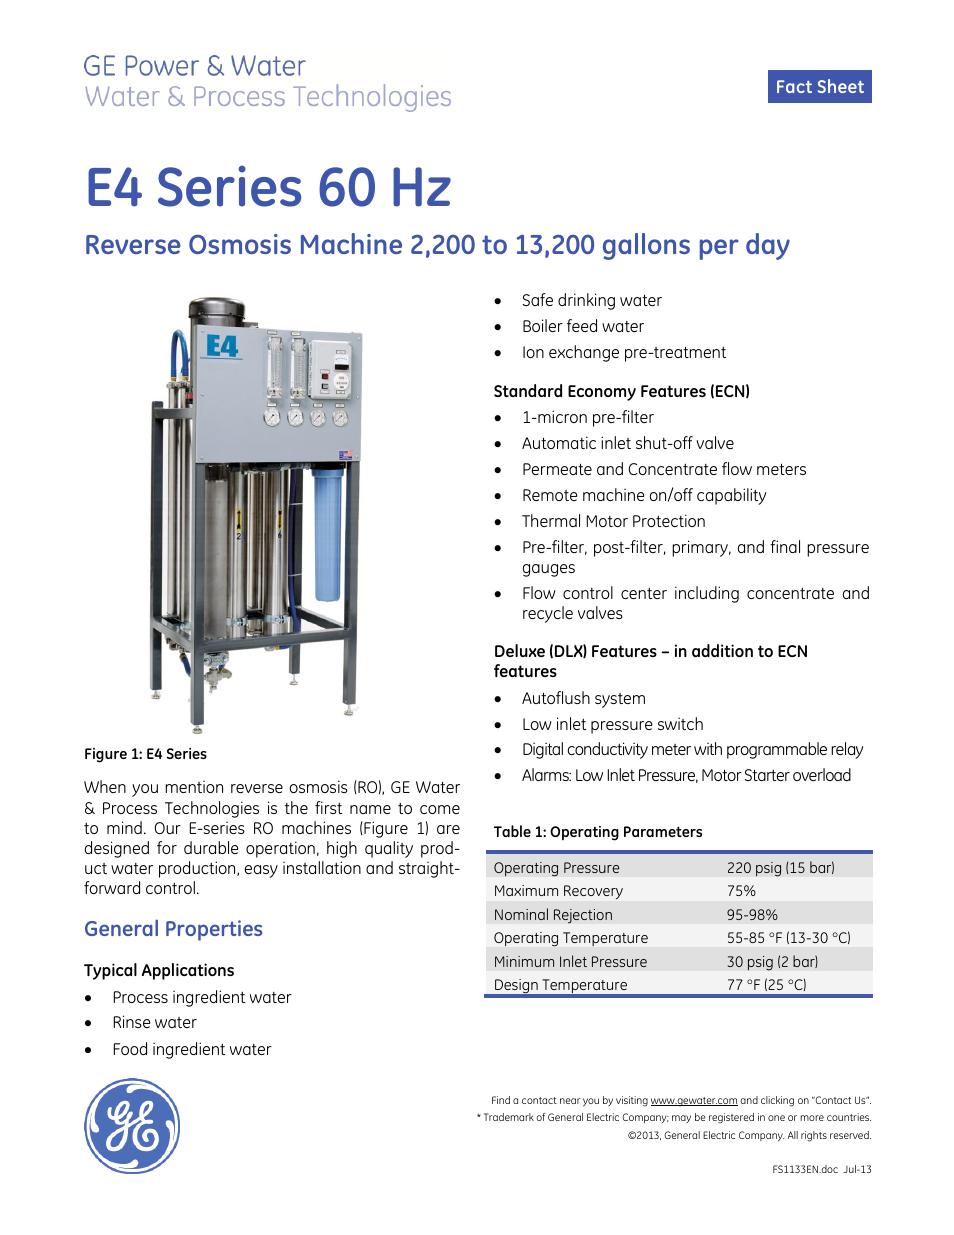 E-Series Reverse Osmosis - E4 60 Hz